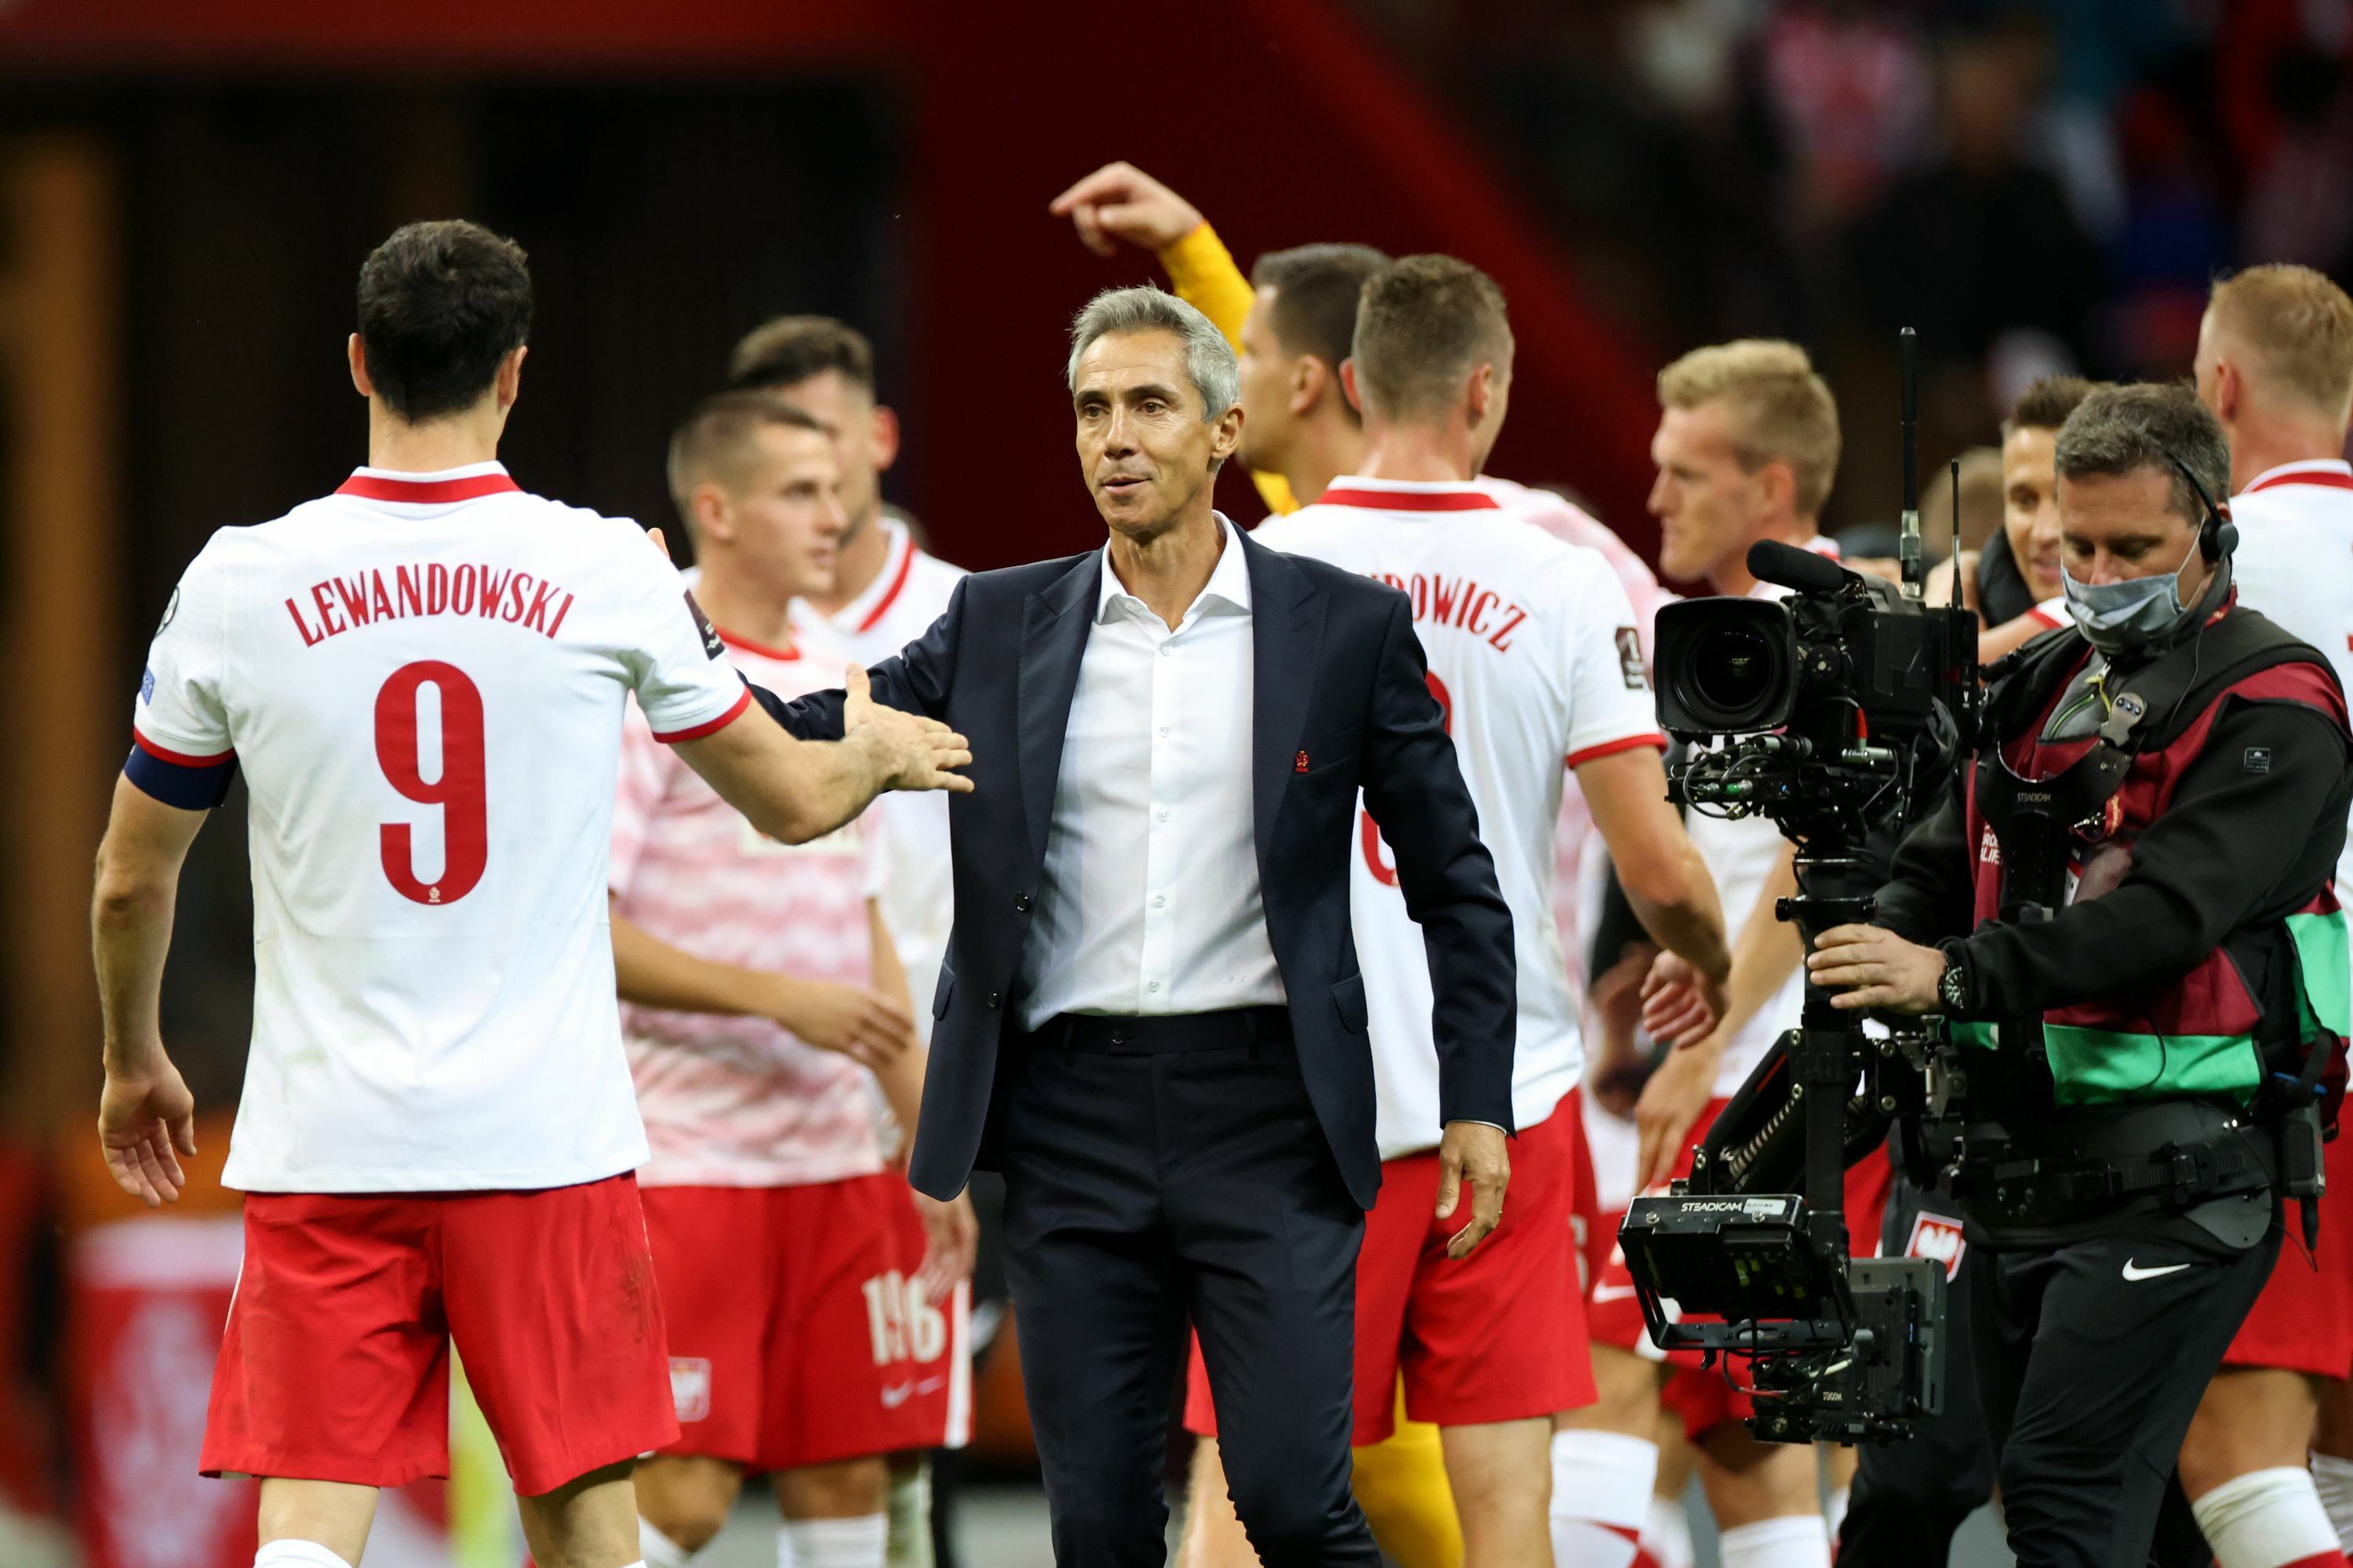 Poland defeated Albania 4:1!